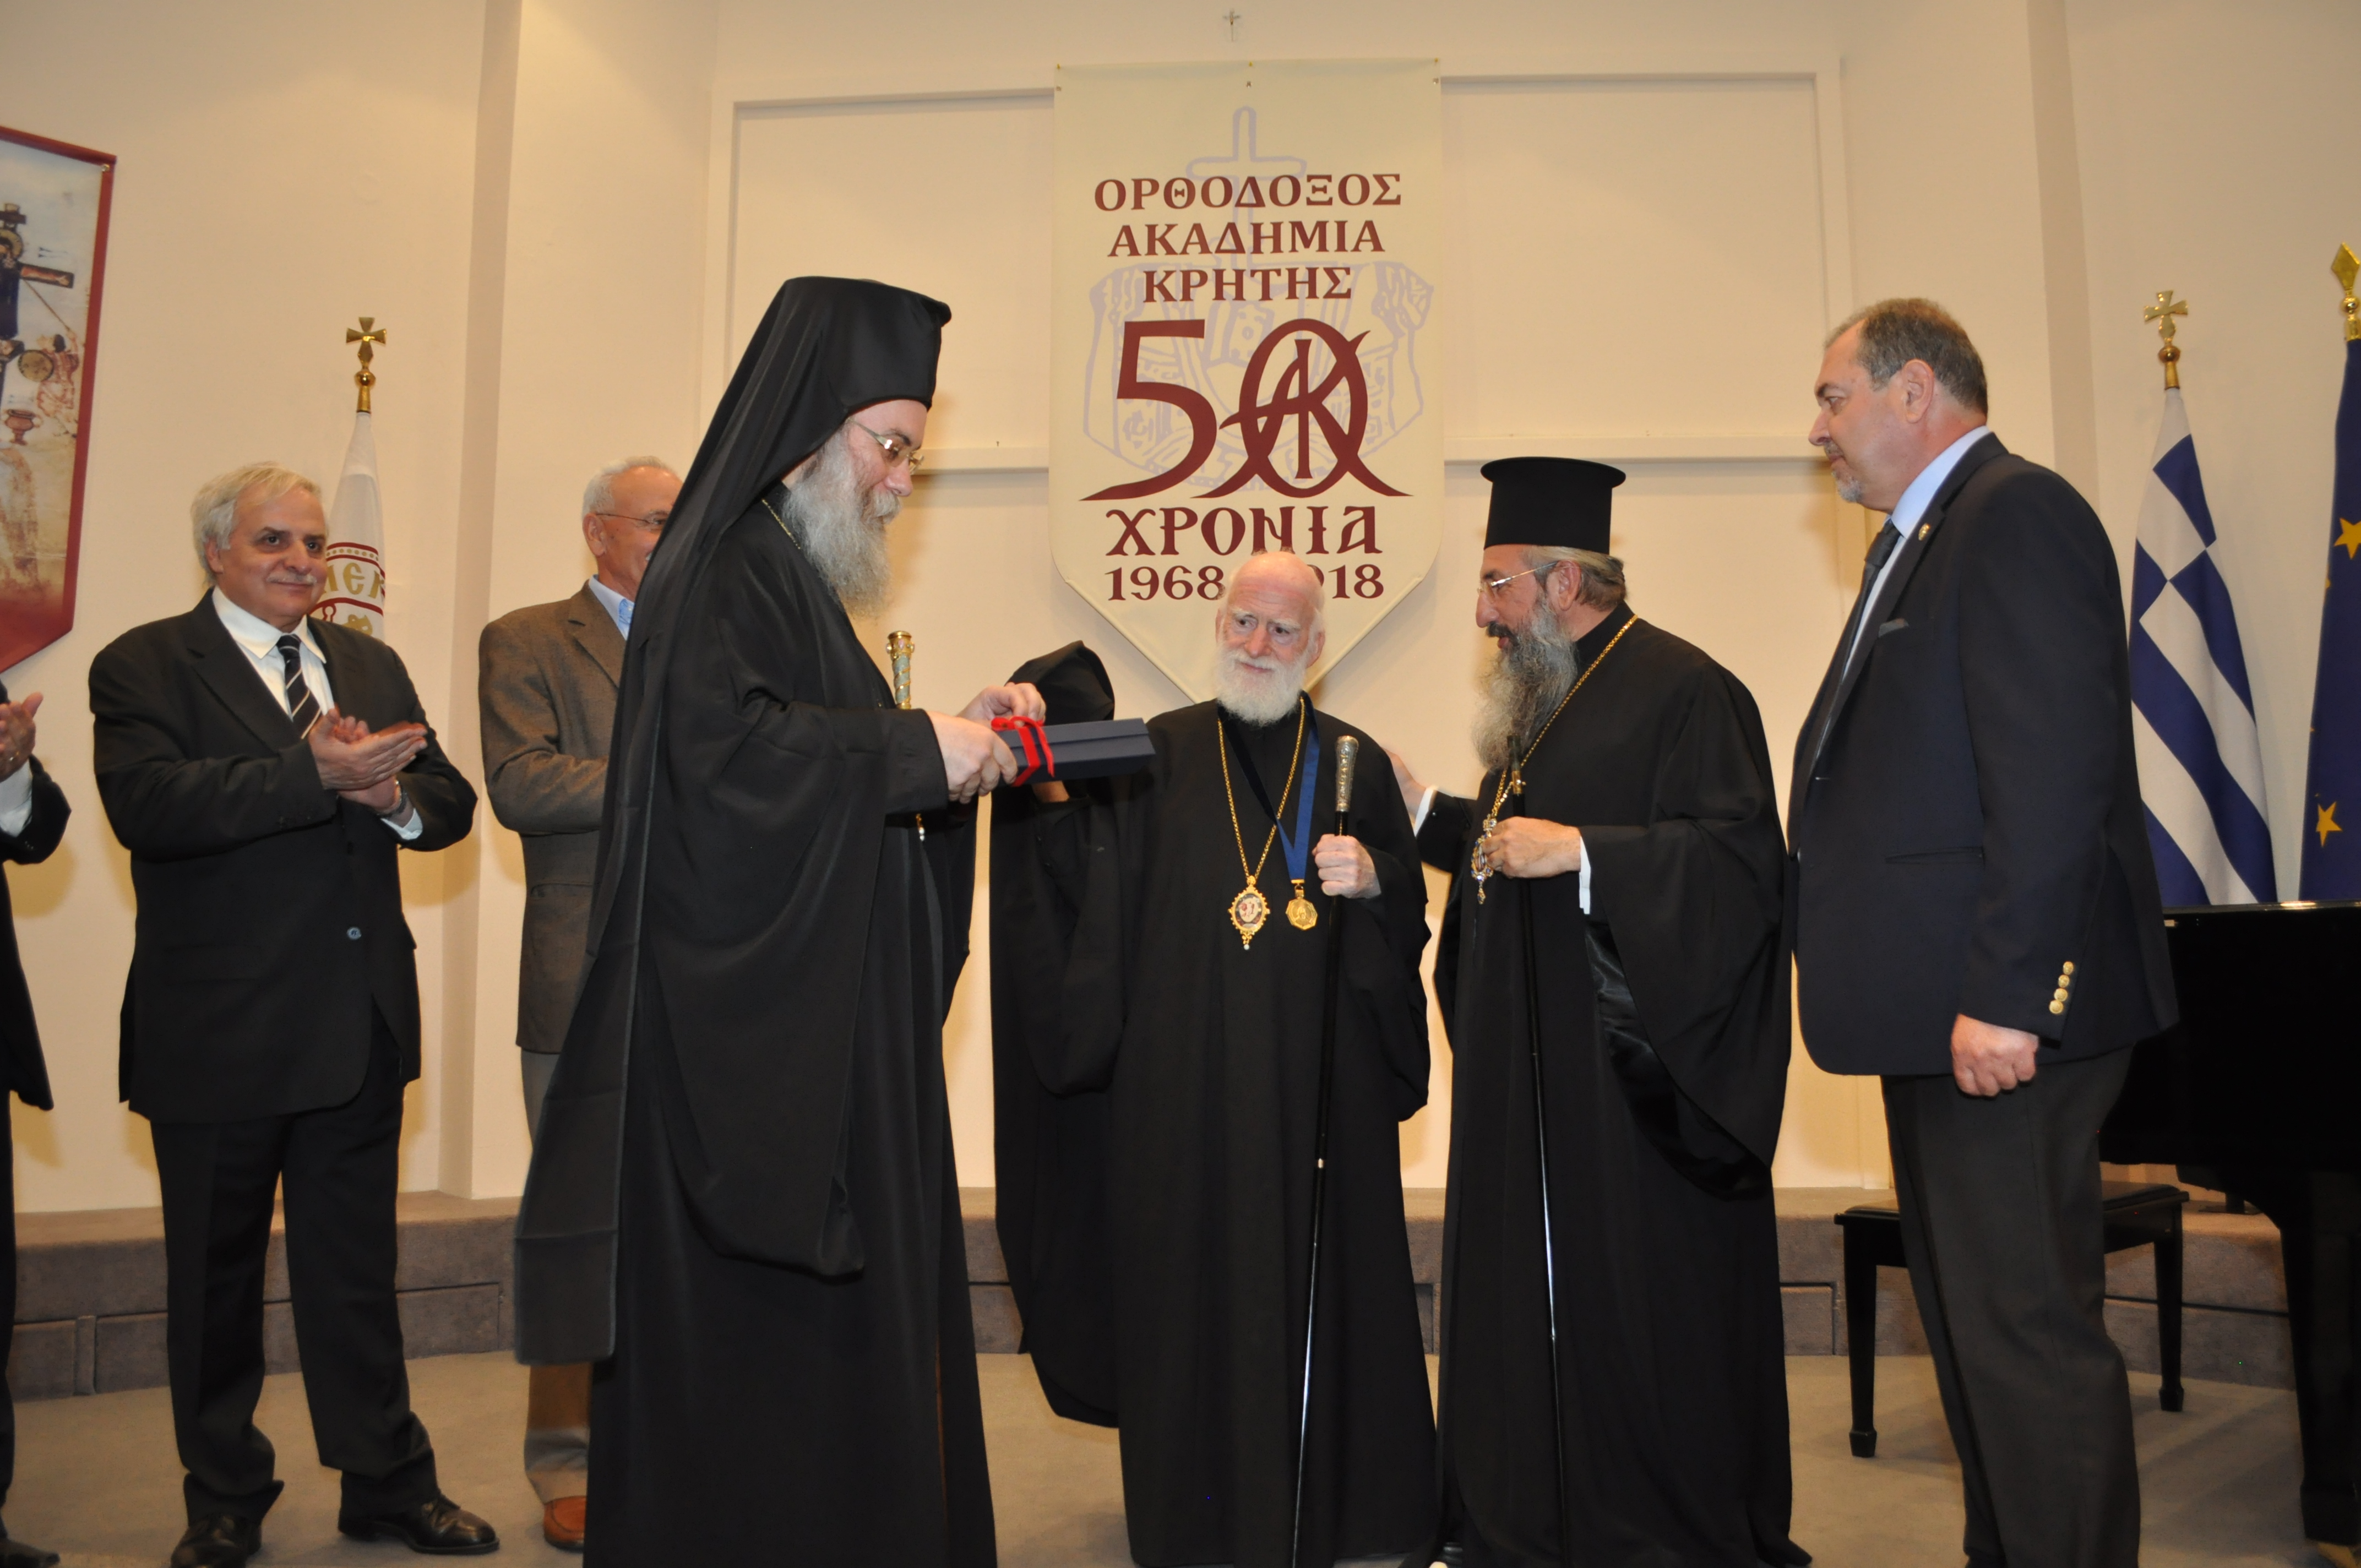 Εταίρος της Ορθόδοξης Ακαδημίας Κρήτης ο Αρχιεπίσκοπος Ειρηναίος